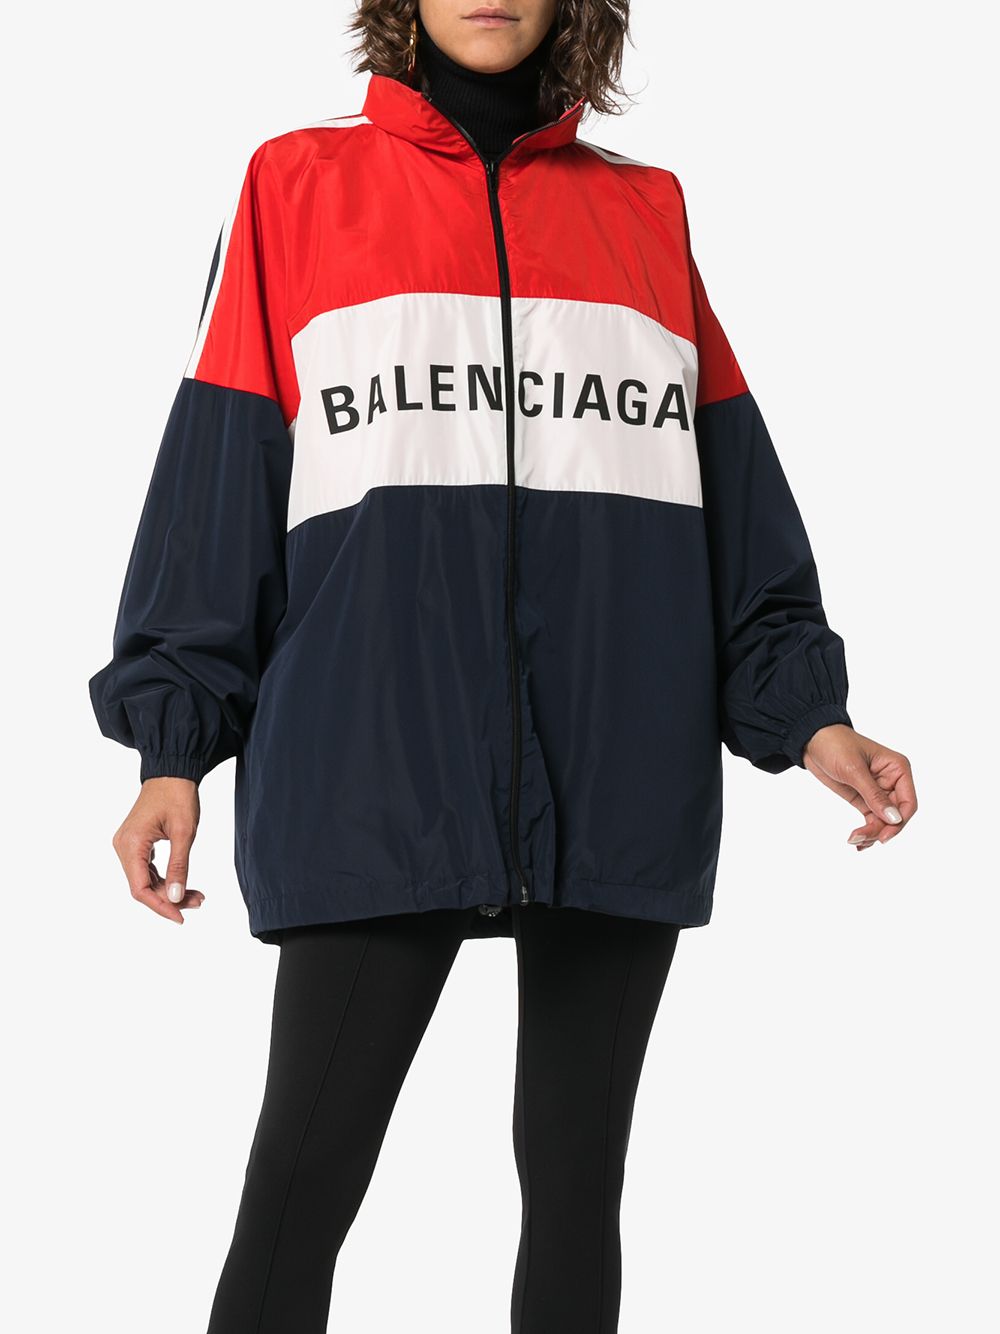 фото Balenciaga ветровка дизайна колор-блок с логотипом